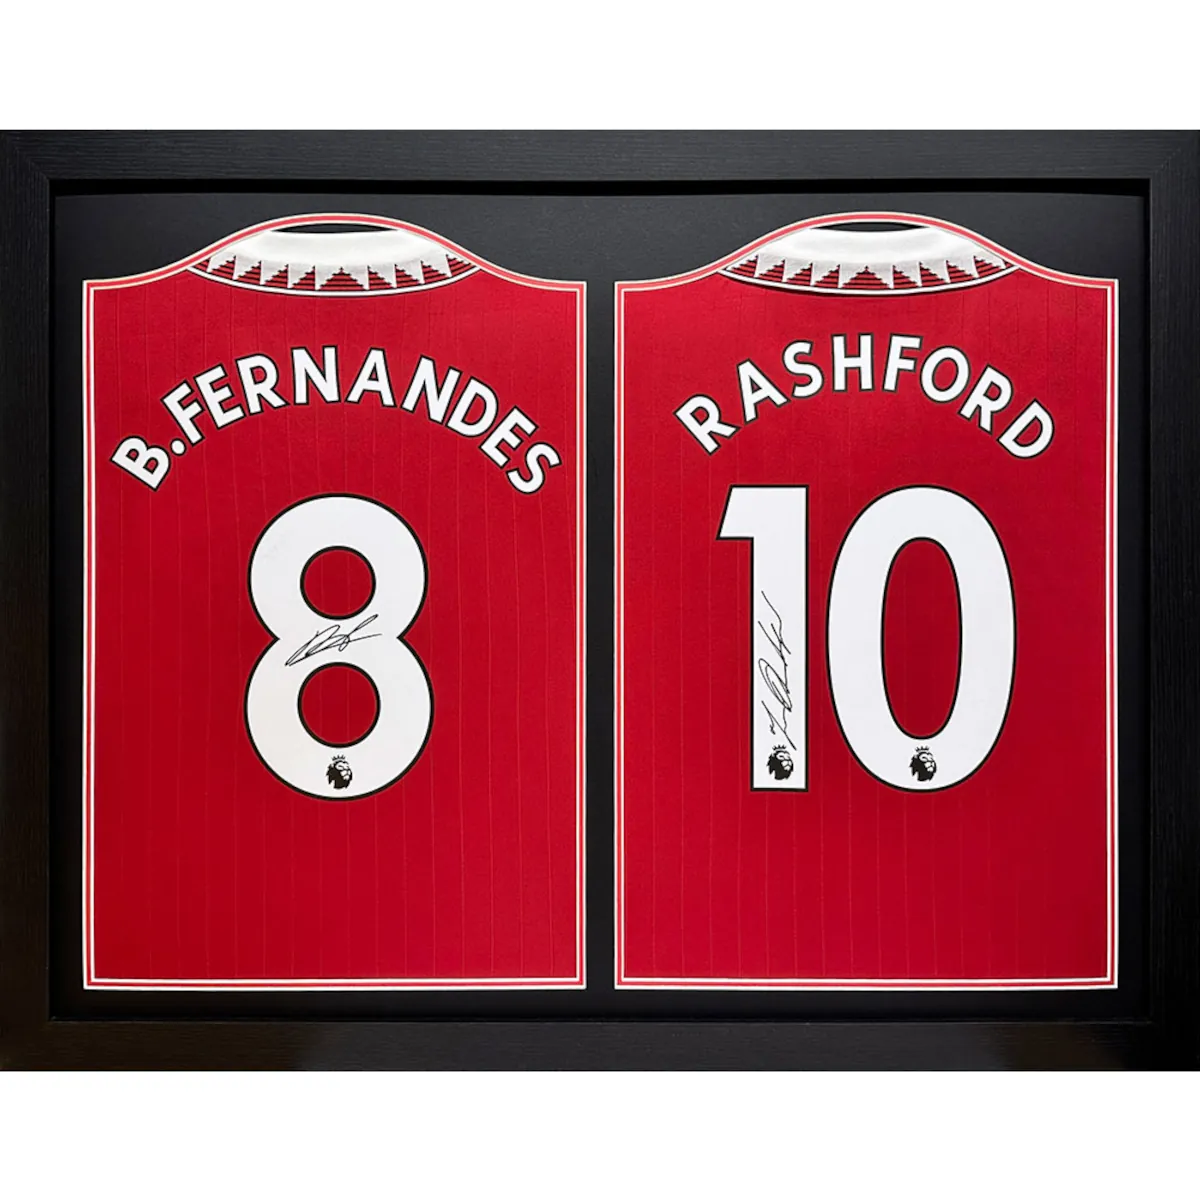 TM-04681 Manchester United F.C. Bruno Fernandes & Rashford Dual Framed Signed 2022-2023 Season Replica Football Shirts